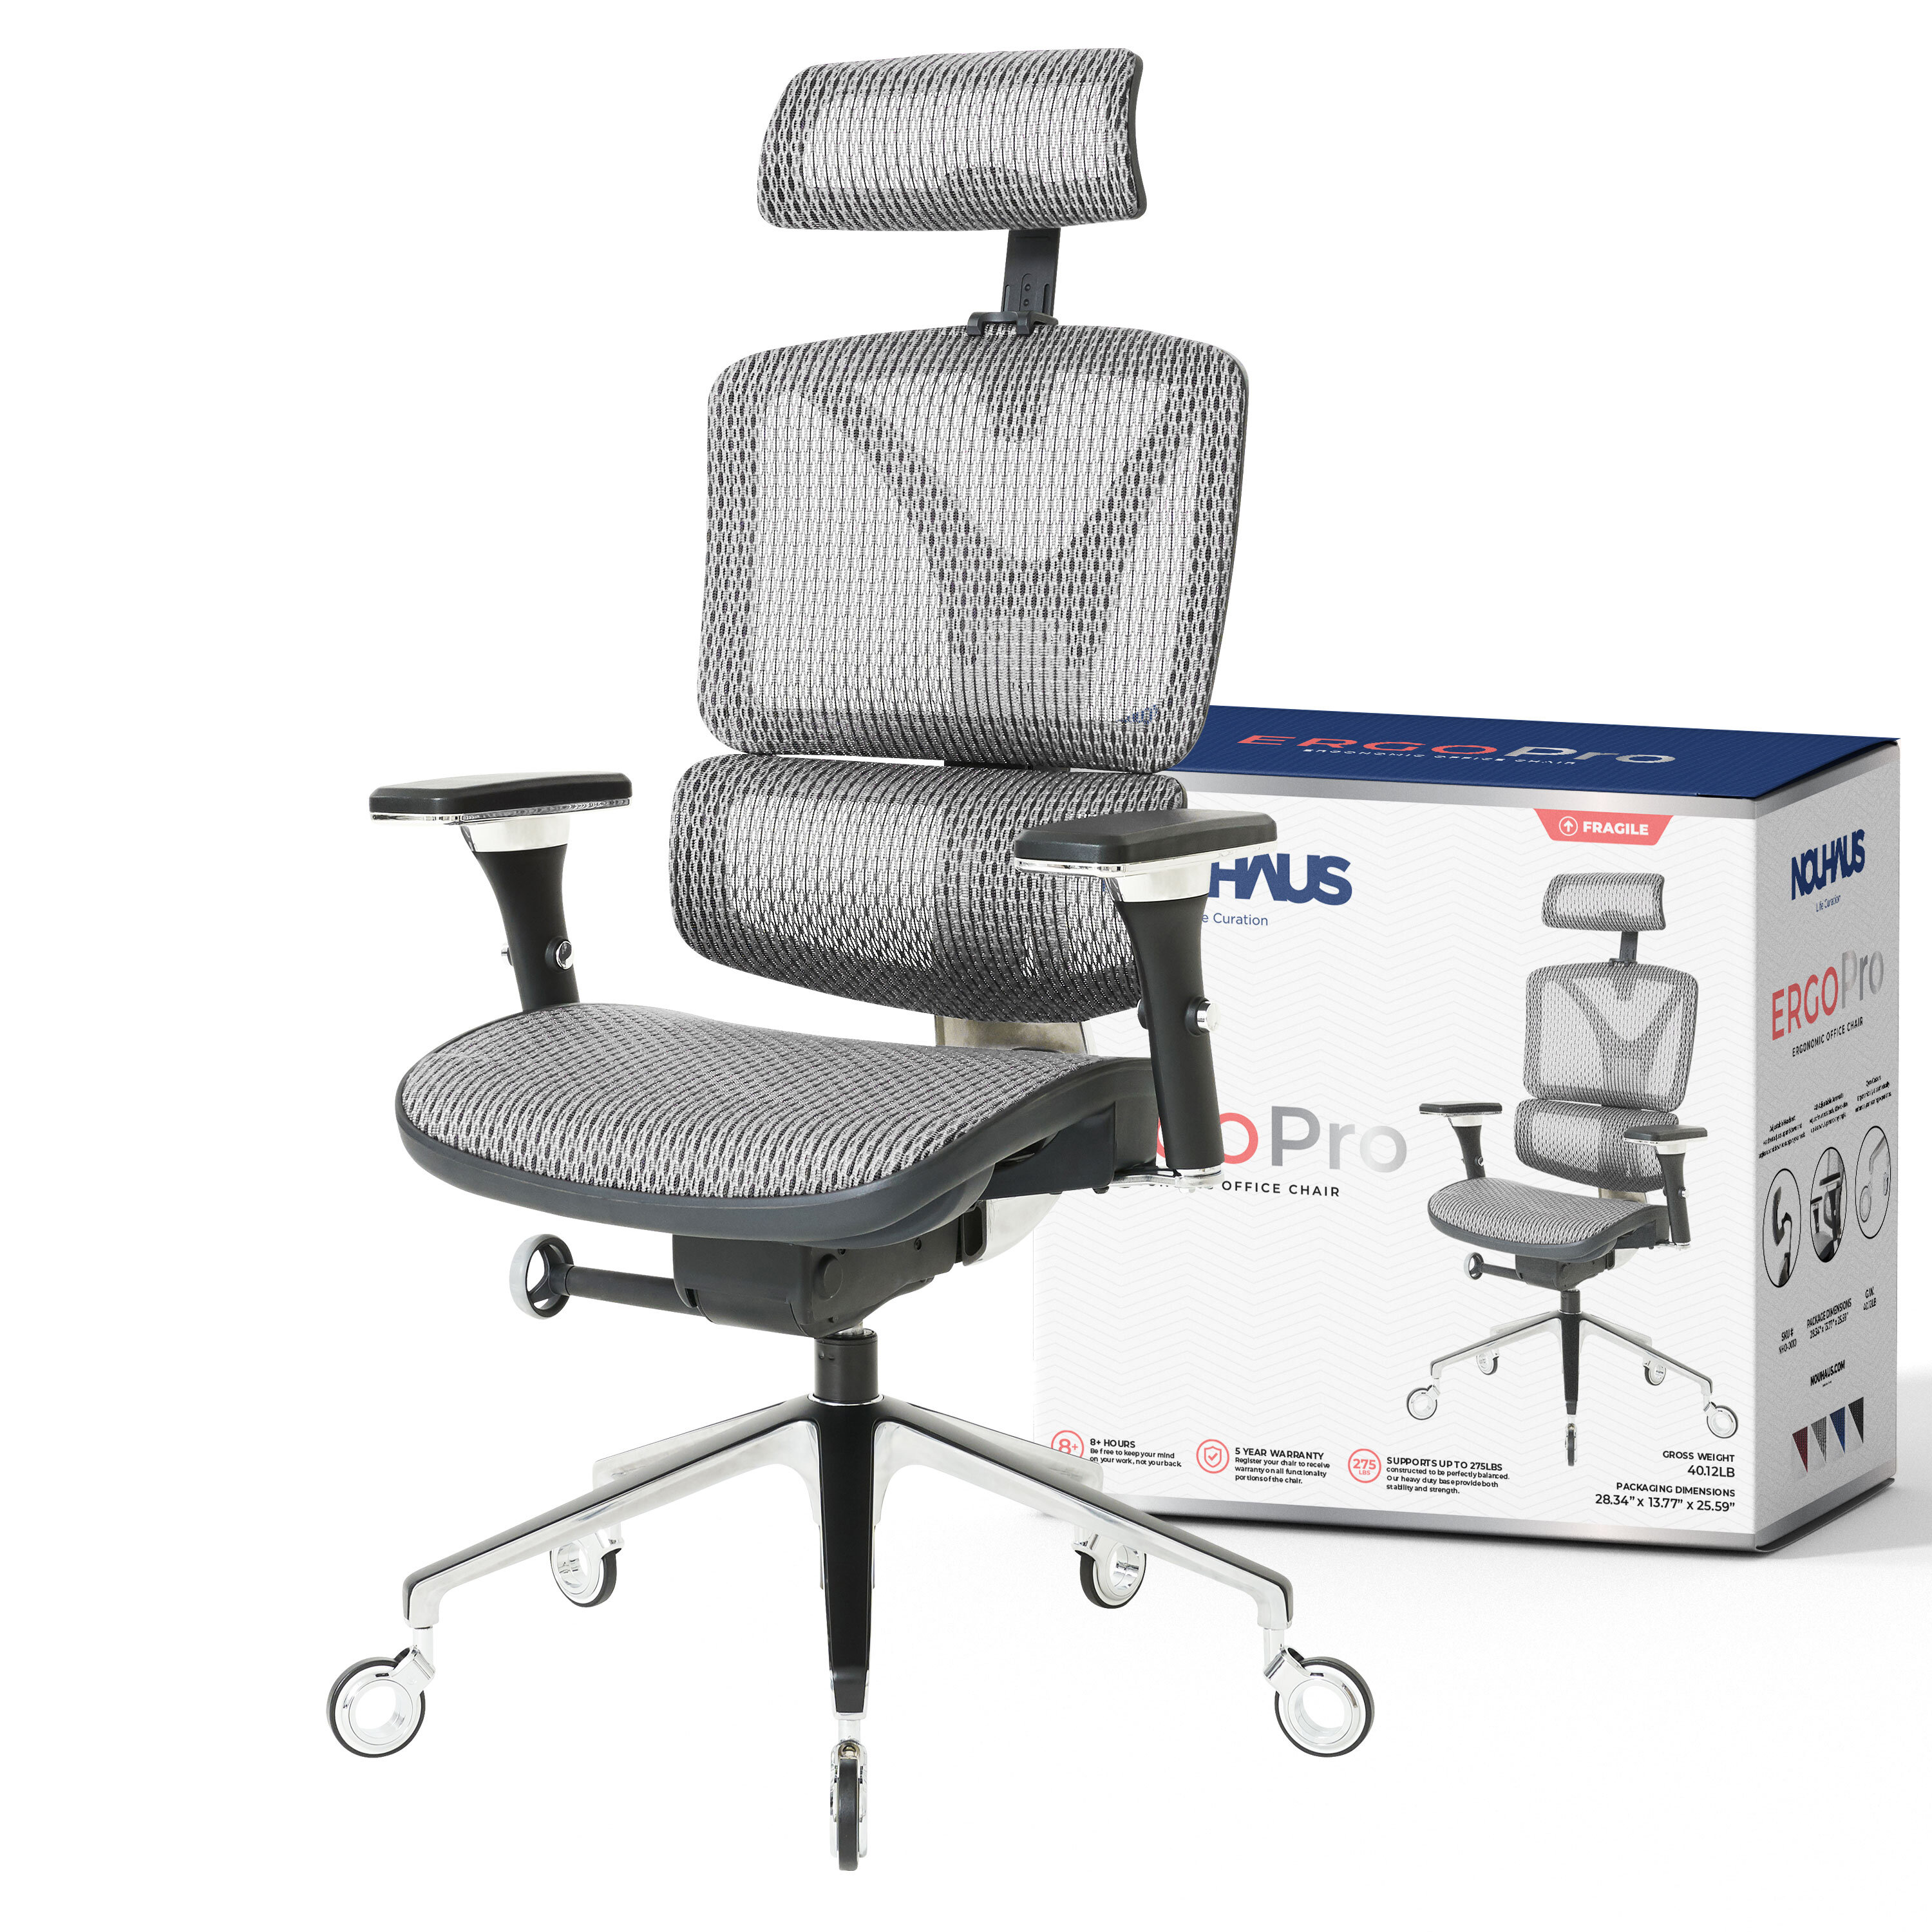 https://assets.wfcdn.com/im/67541329/compr-r85/1703/170363148/ergonomic-task-chair-with-headrest.jpg